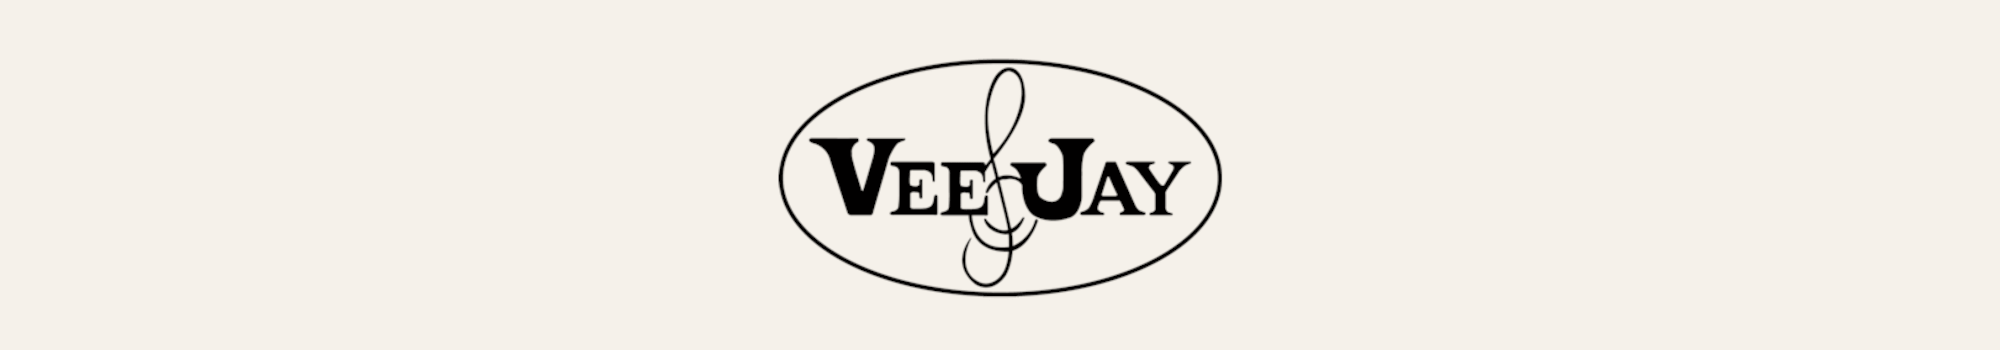 Vee Jay Records